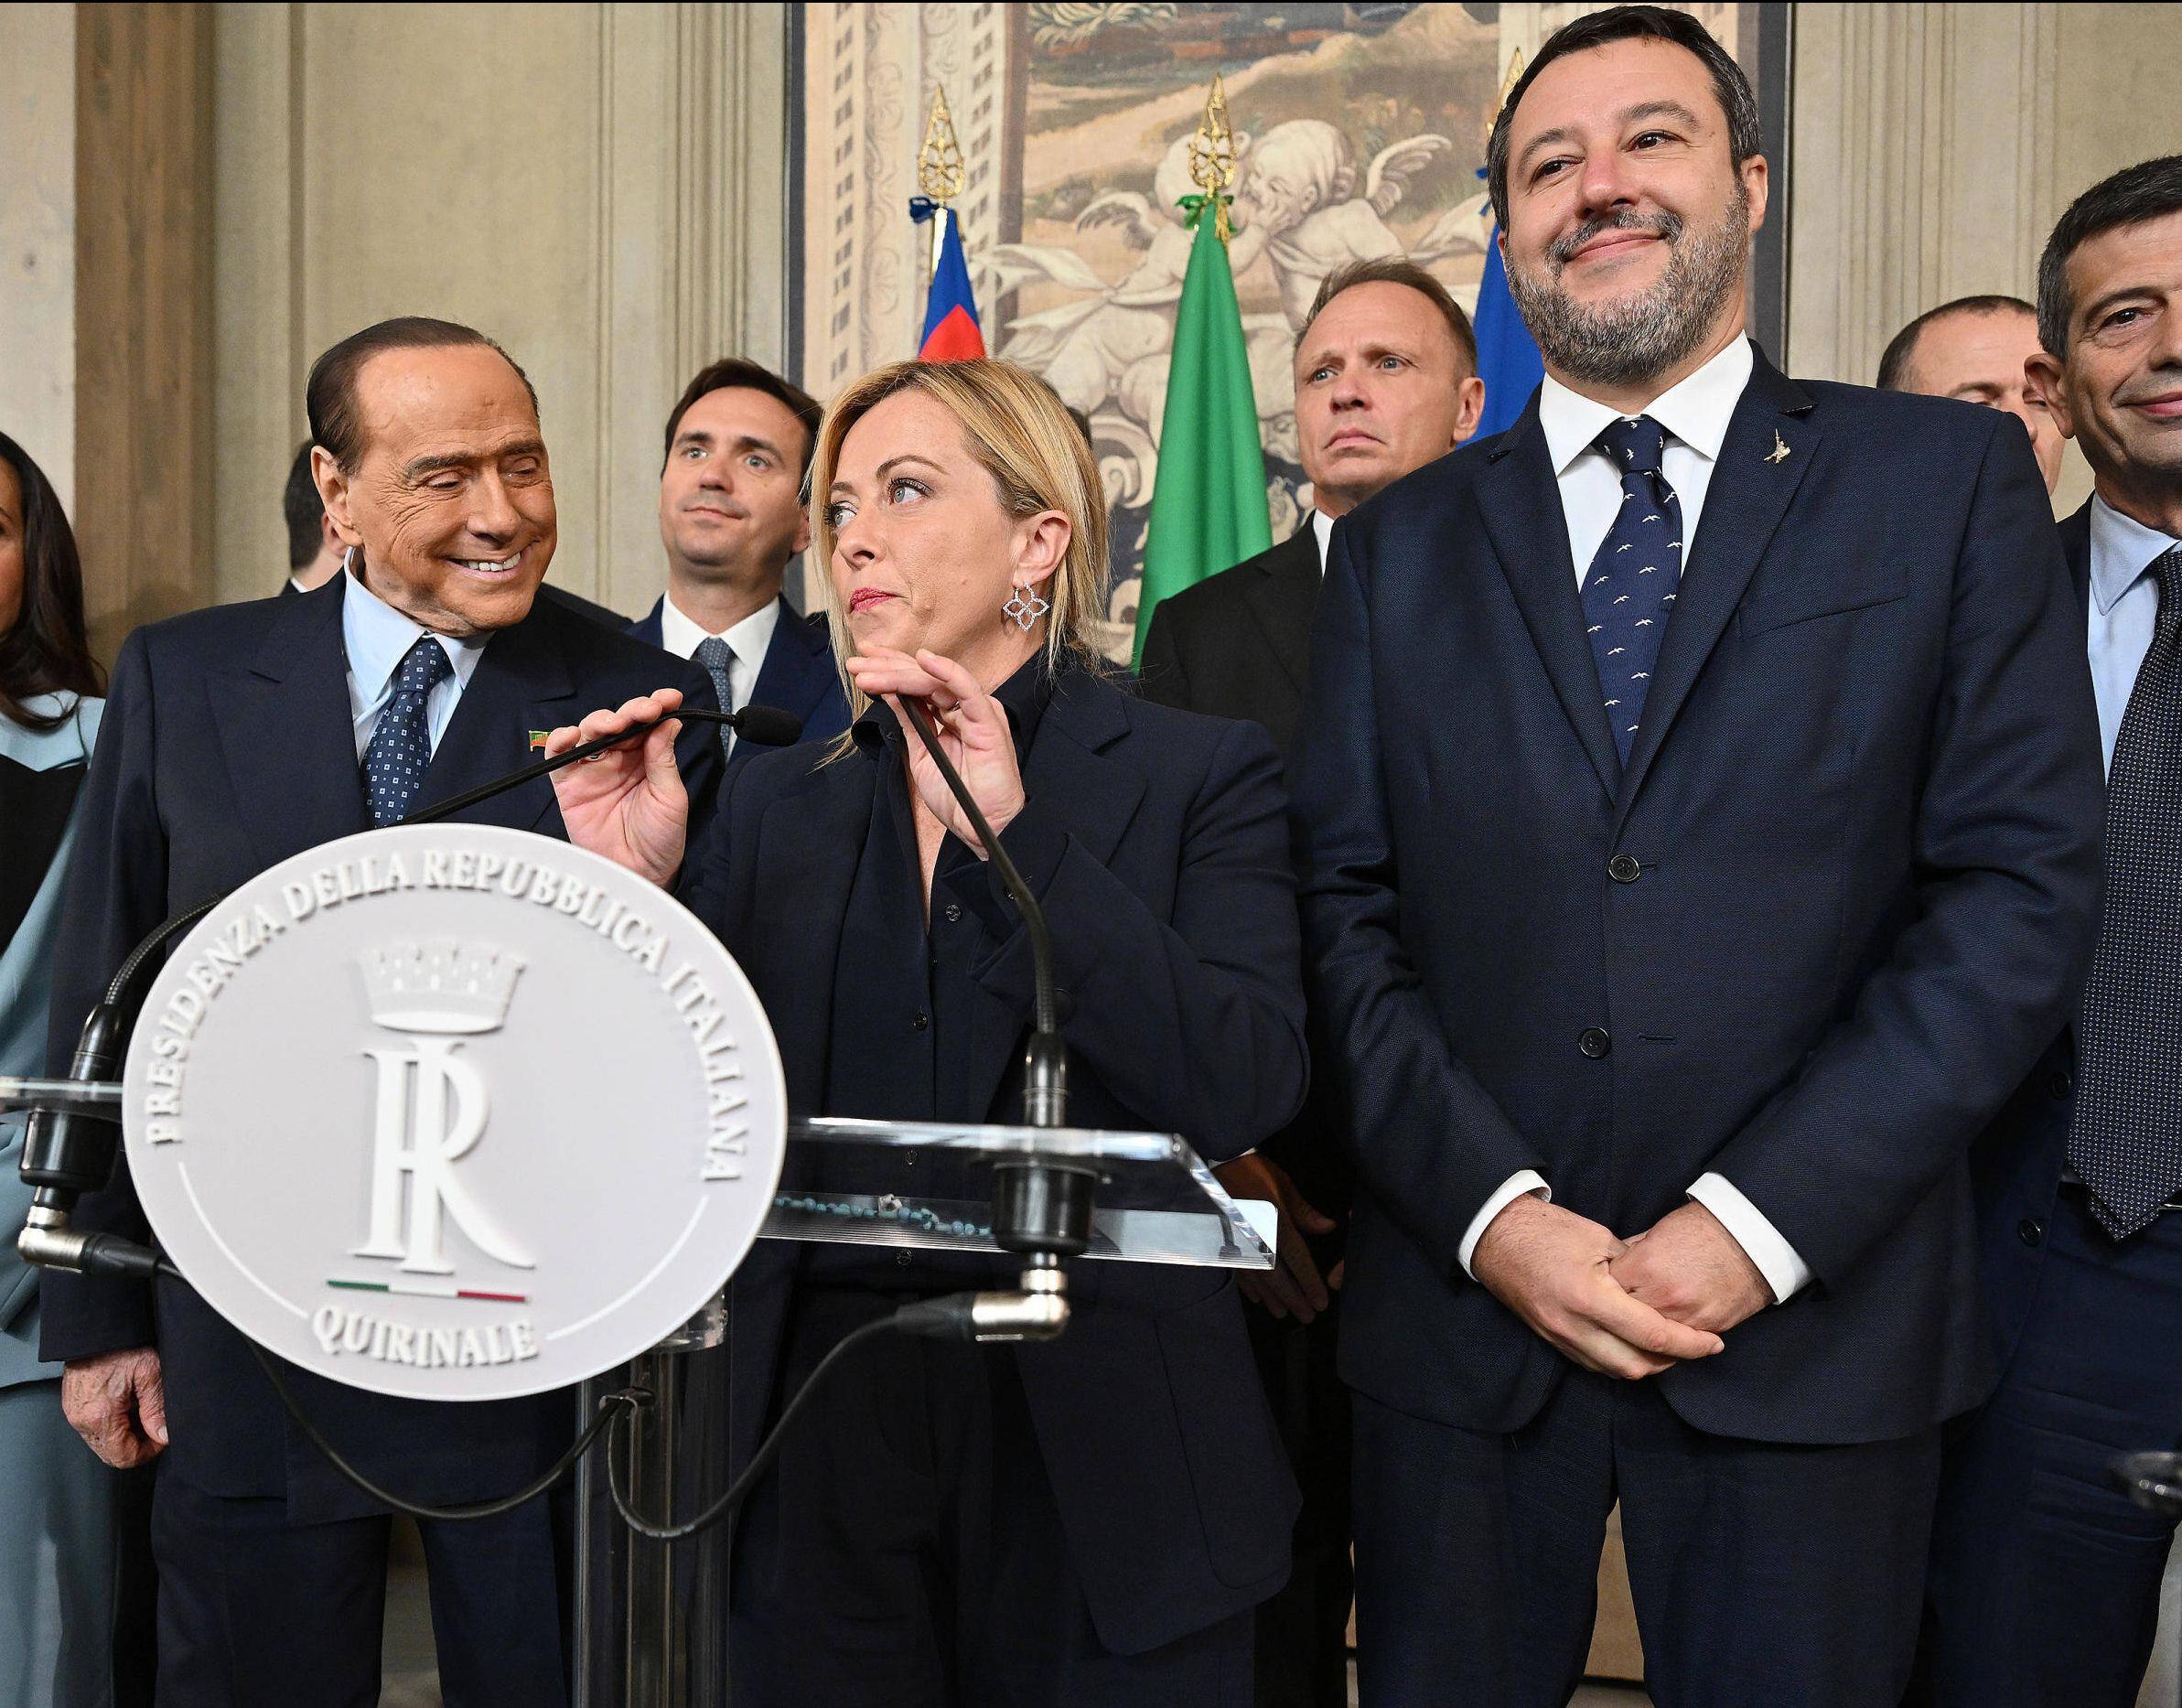 Silvio Berlusconi von der Forza Italia, Italiens neue Ministerpräsidentin Giorgia Meloni von der Fratelli d'Italia und Matteo Salvini von der Lega bei einer Pressekonferenz nach der Wahl, Rom, 21. Oktober 2022.